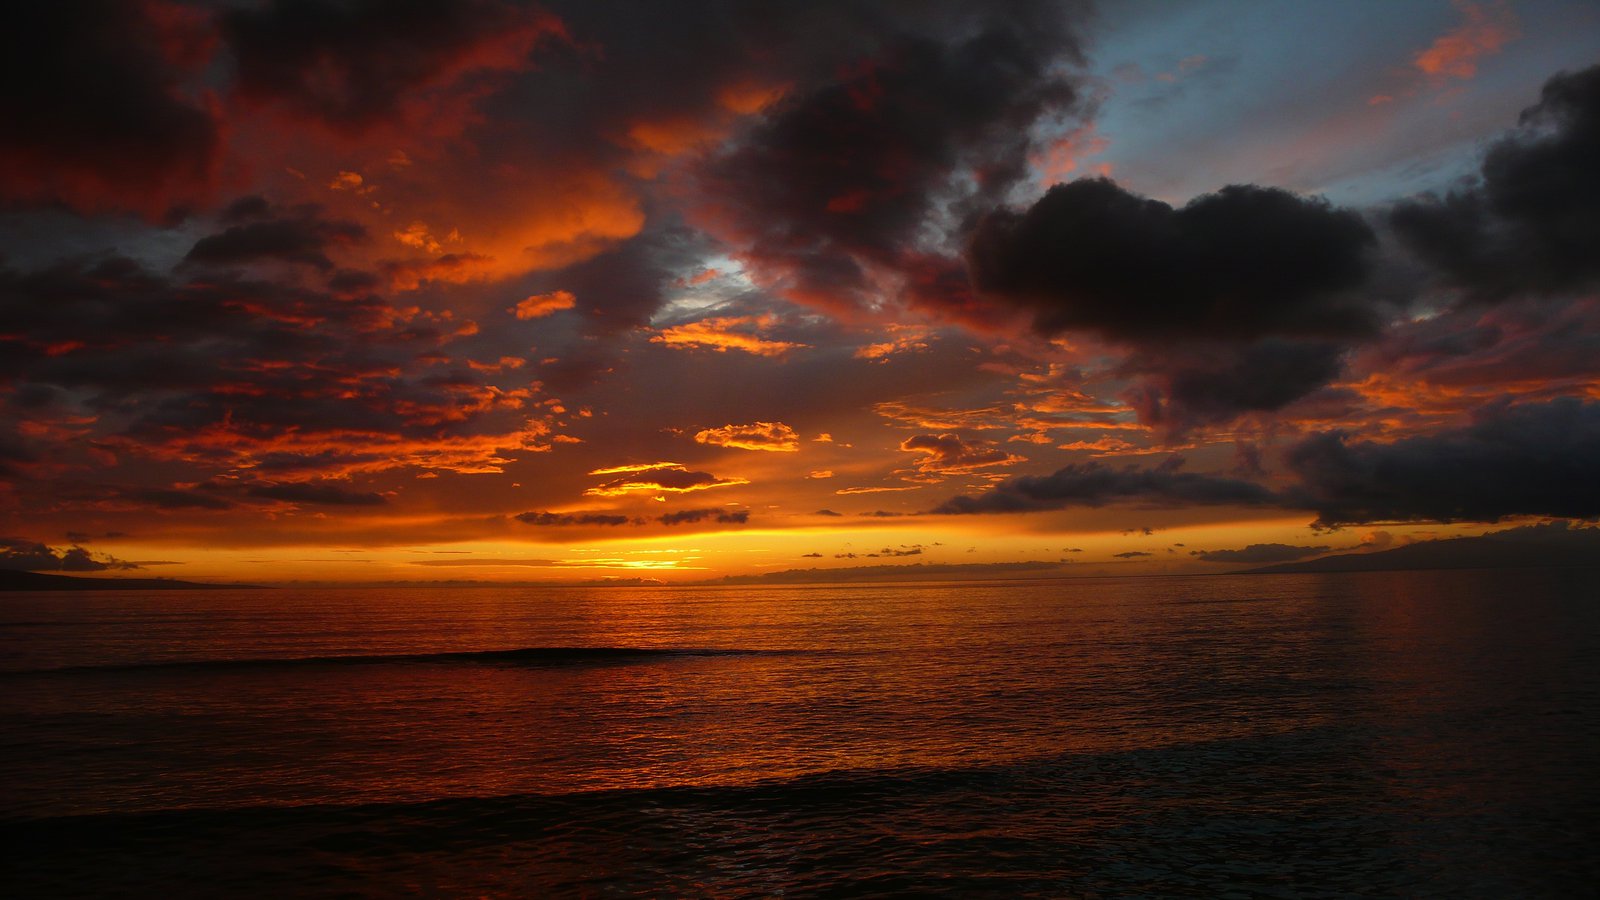 Hawaiin sunset